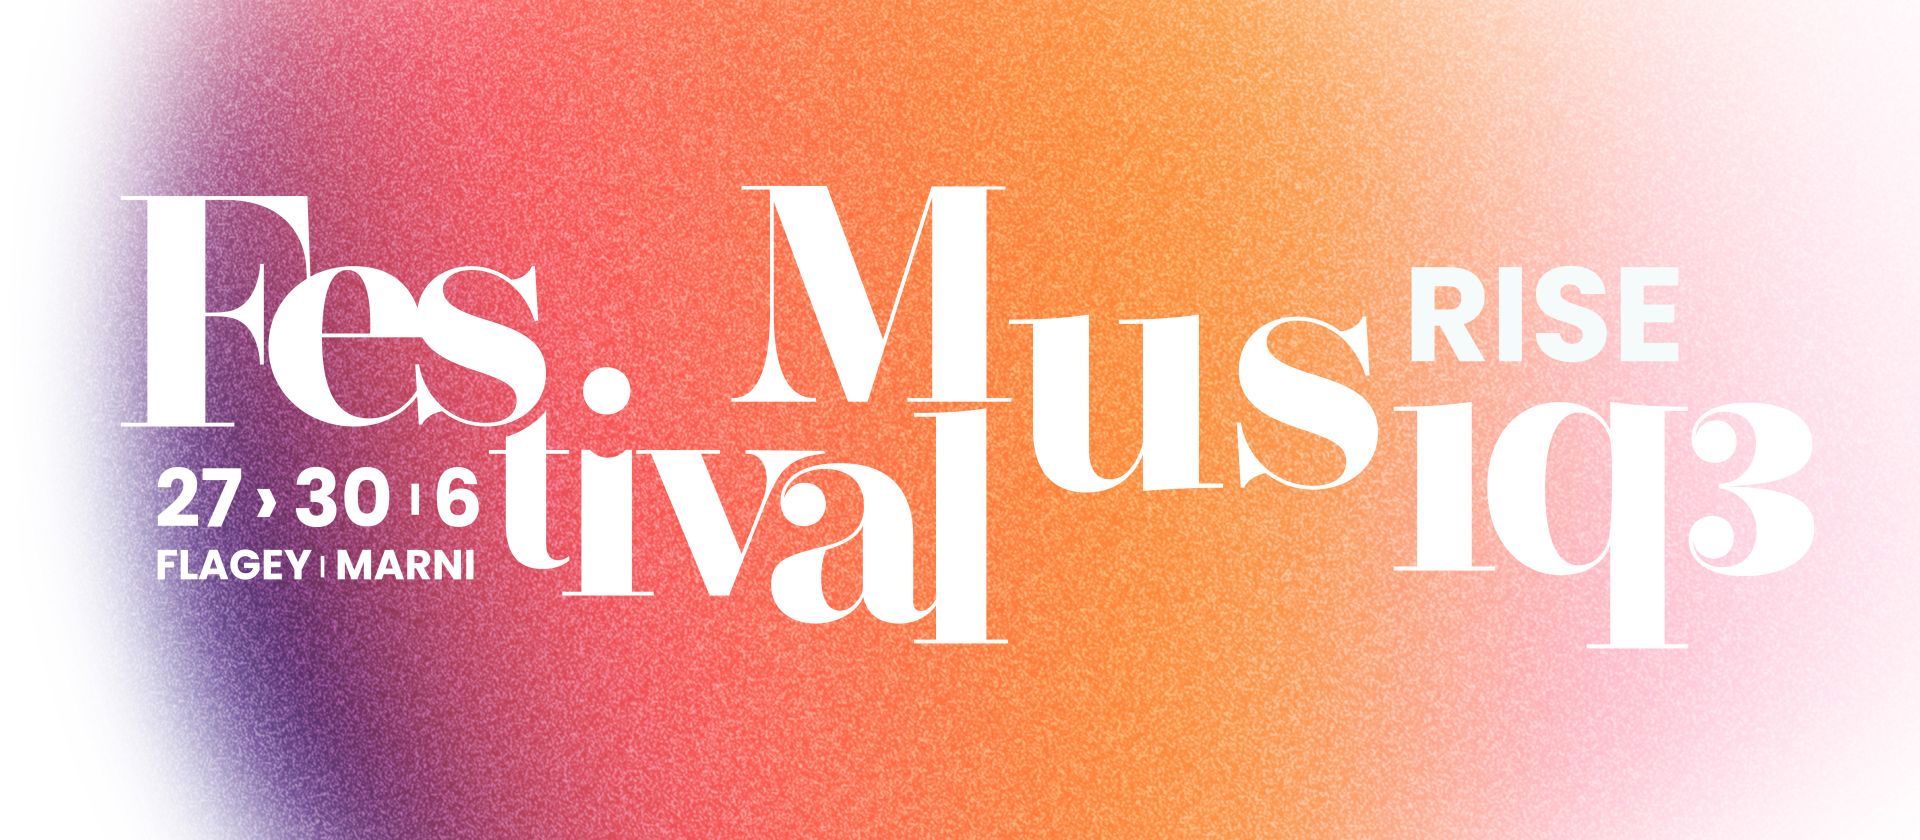 Une nouvelle occasion de vivre une expérience musicale enrichissante et accessible à tous au Festival Musiq3 ! 